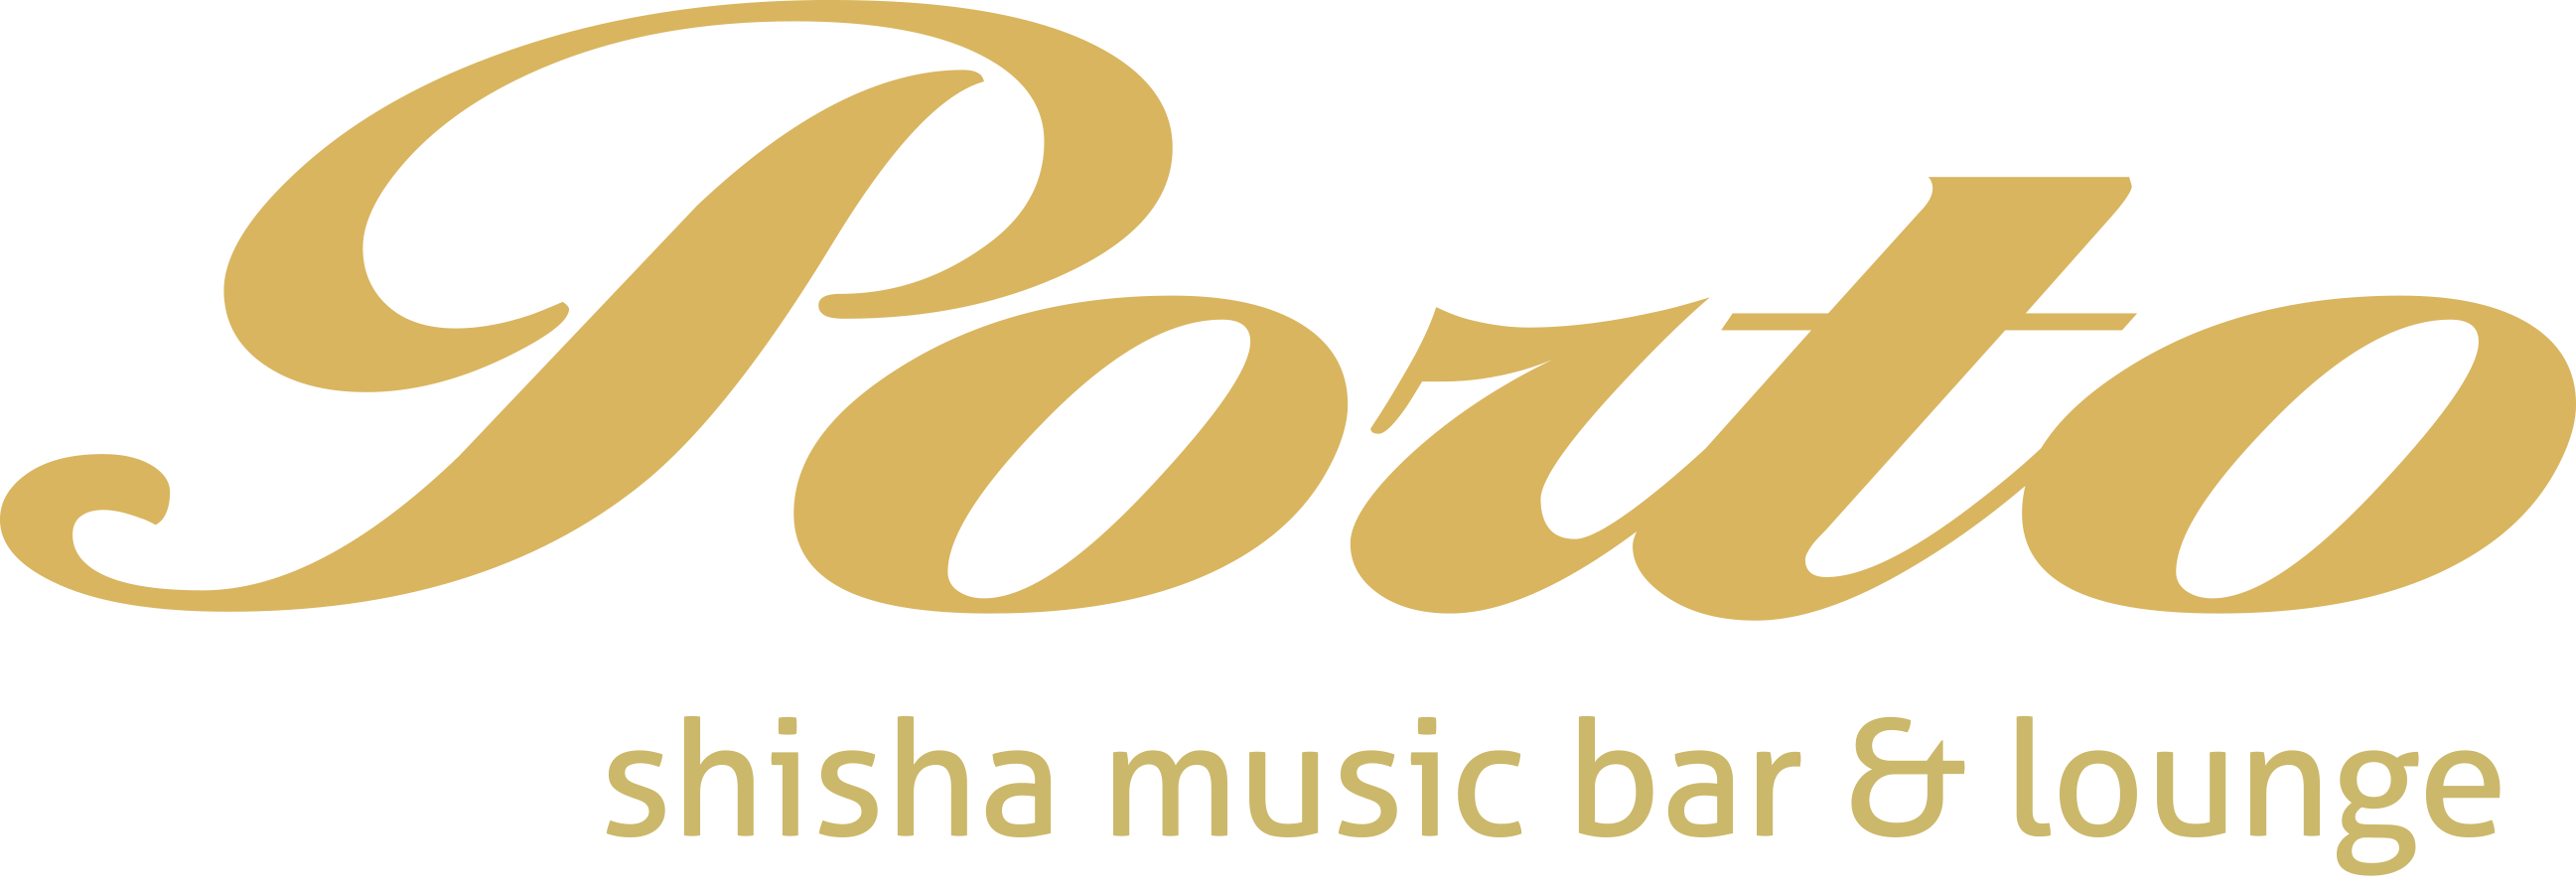 Shisha & Music Bar Porto